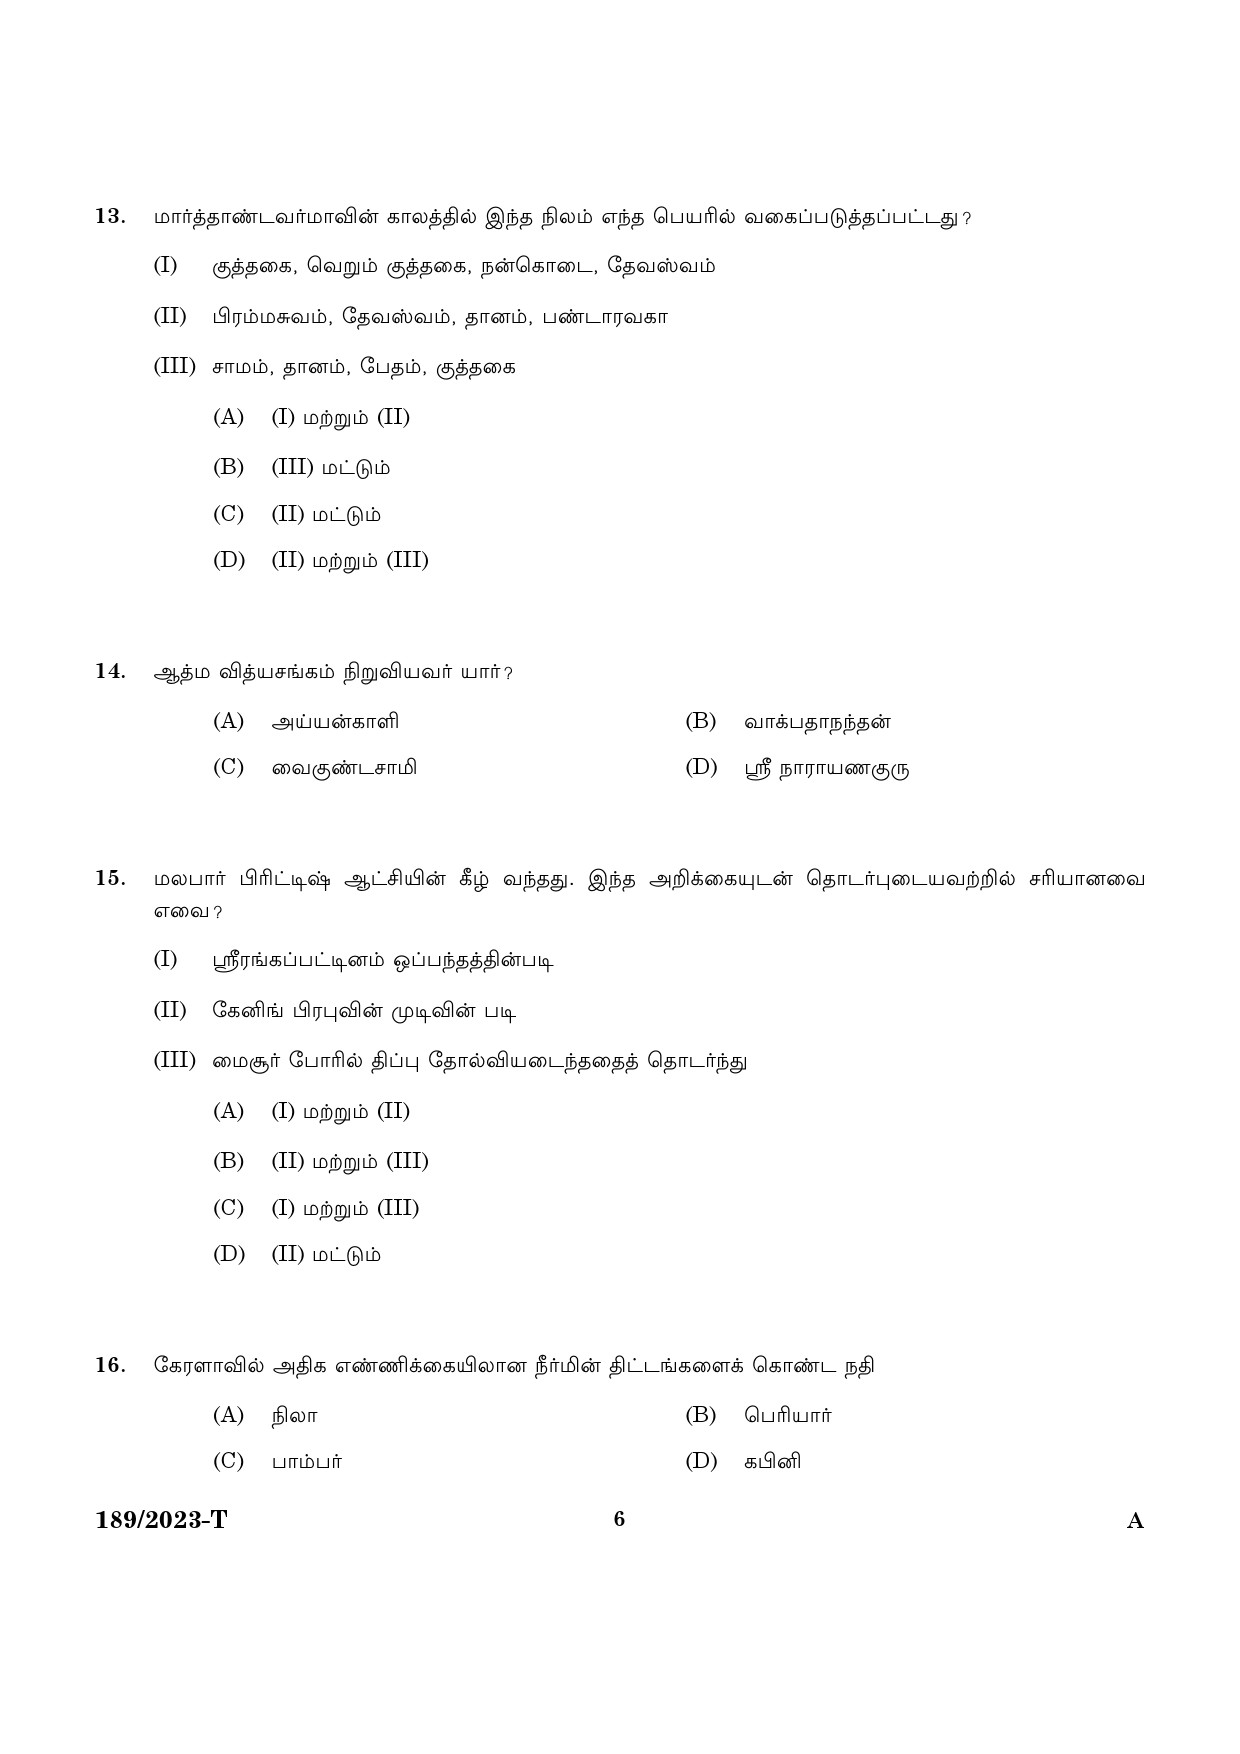 KPSC LGS Tamil Exam 2023 Code 1892023 T 4